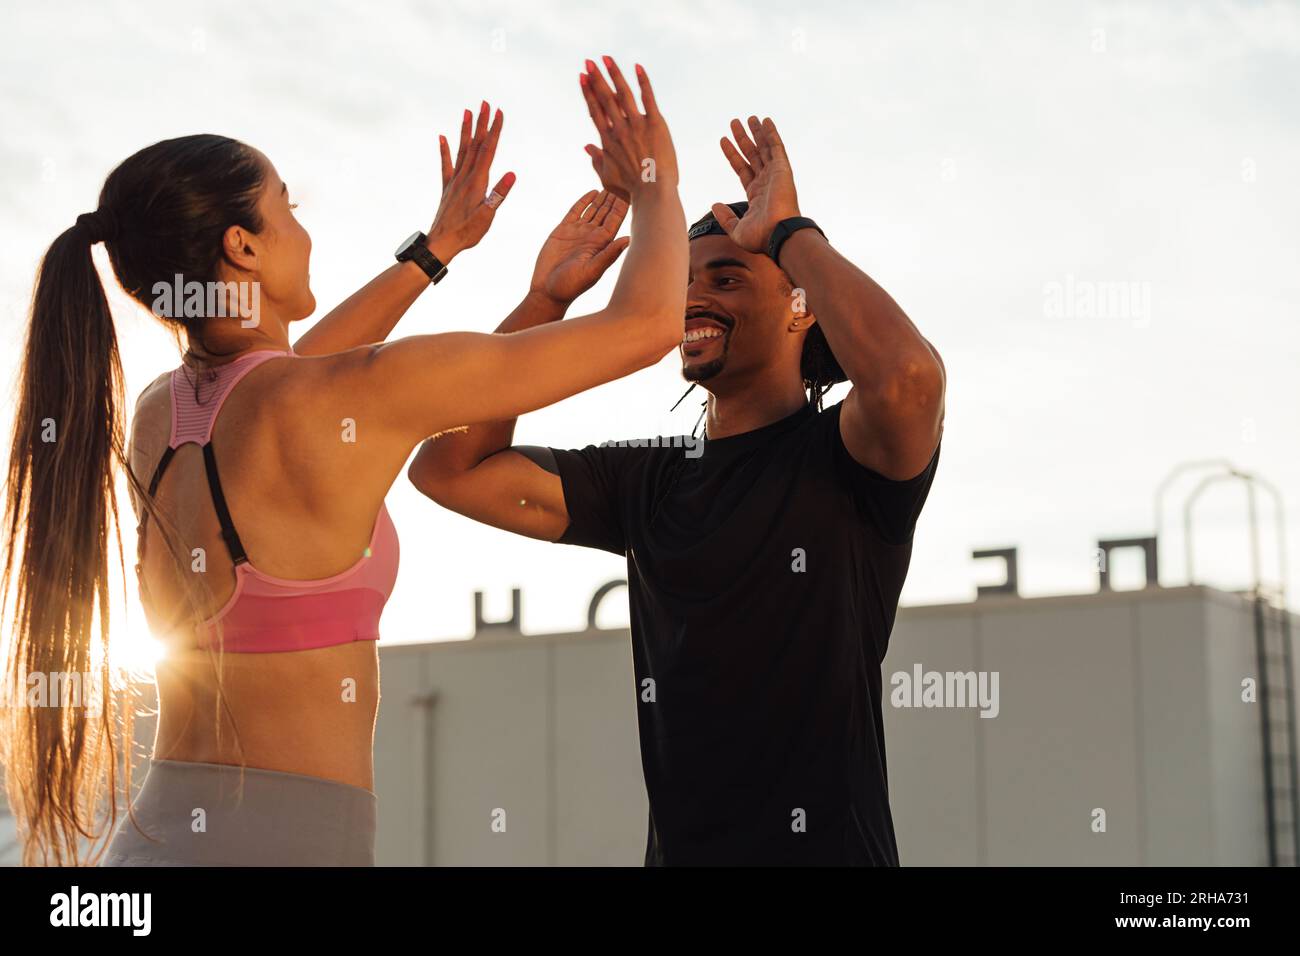 Ein Mann und eine Frau, die während eines Trainings auf dem Dach High Five machen Stockfoto